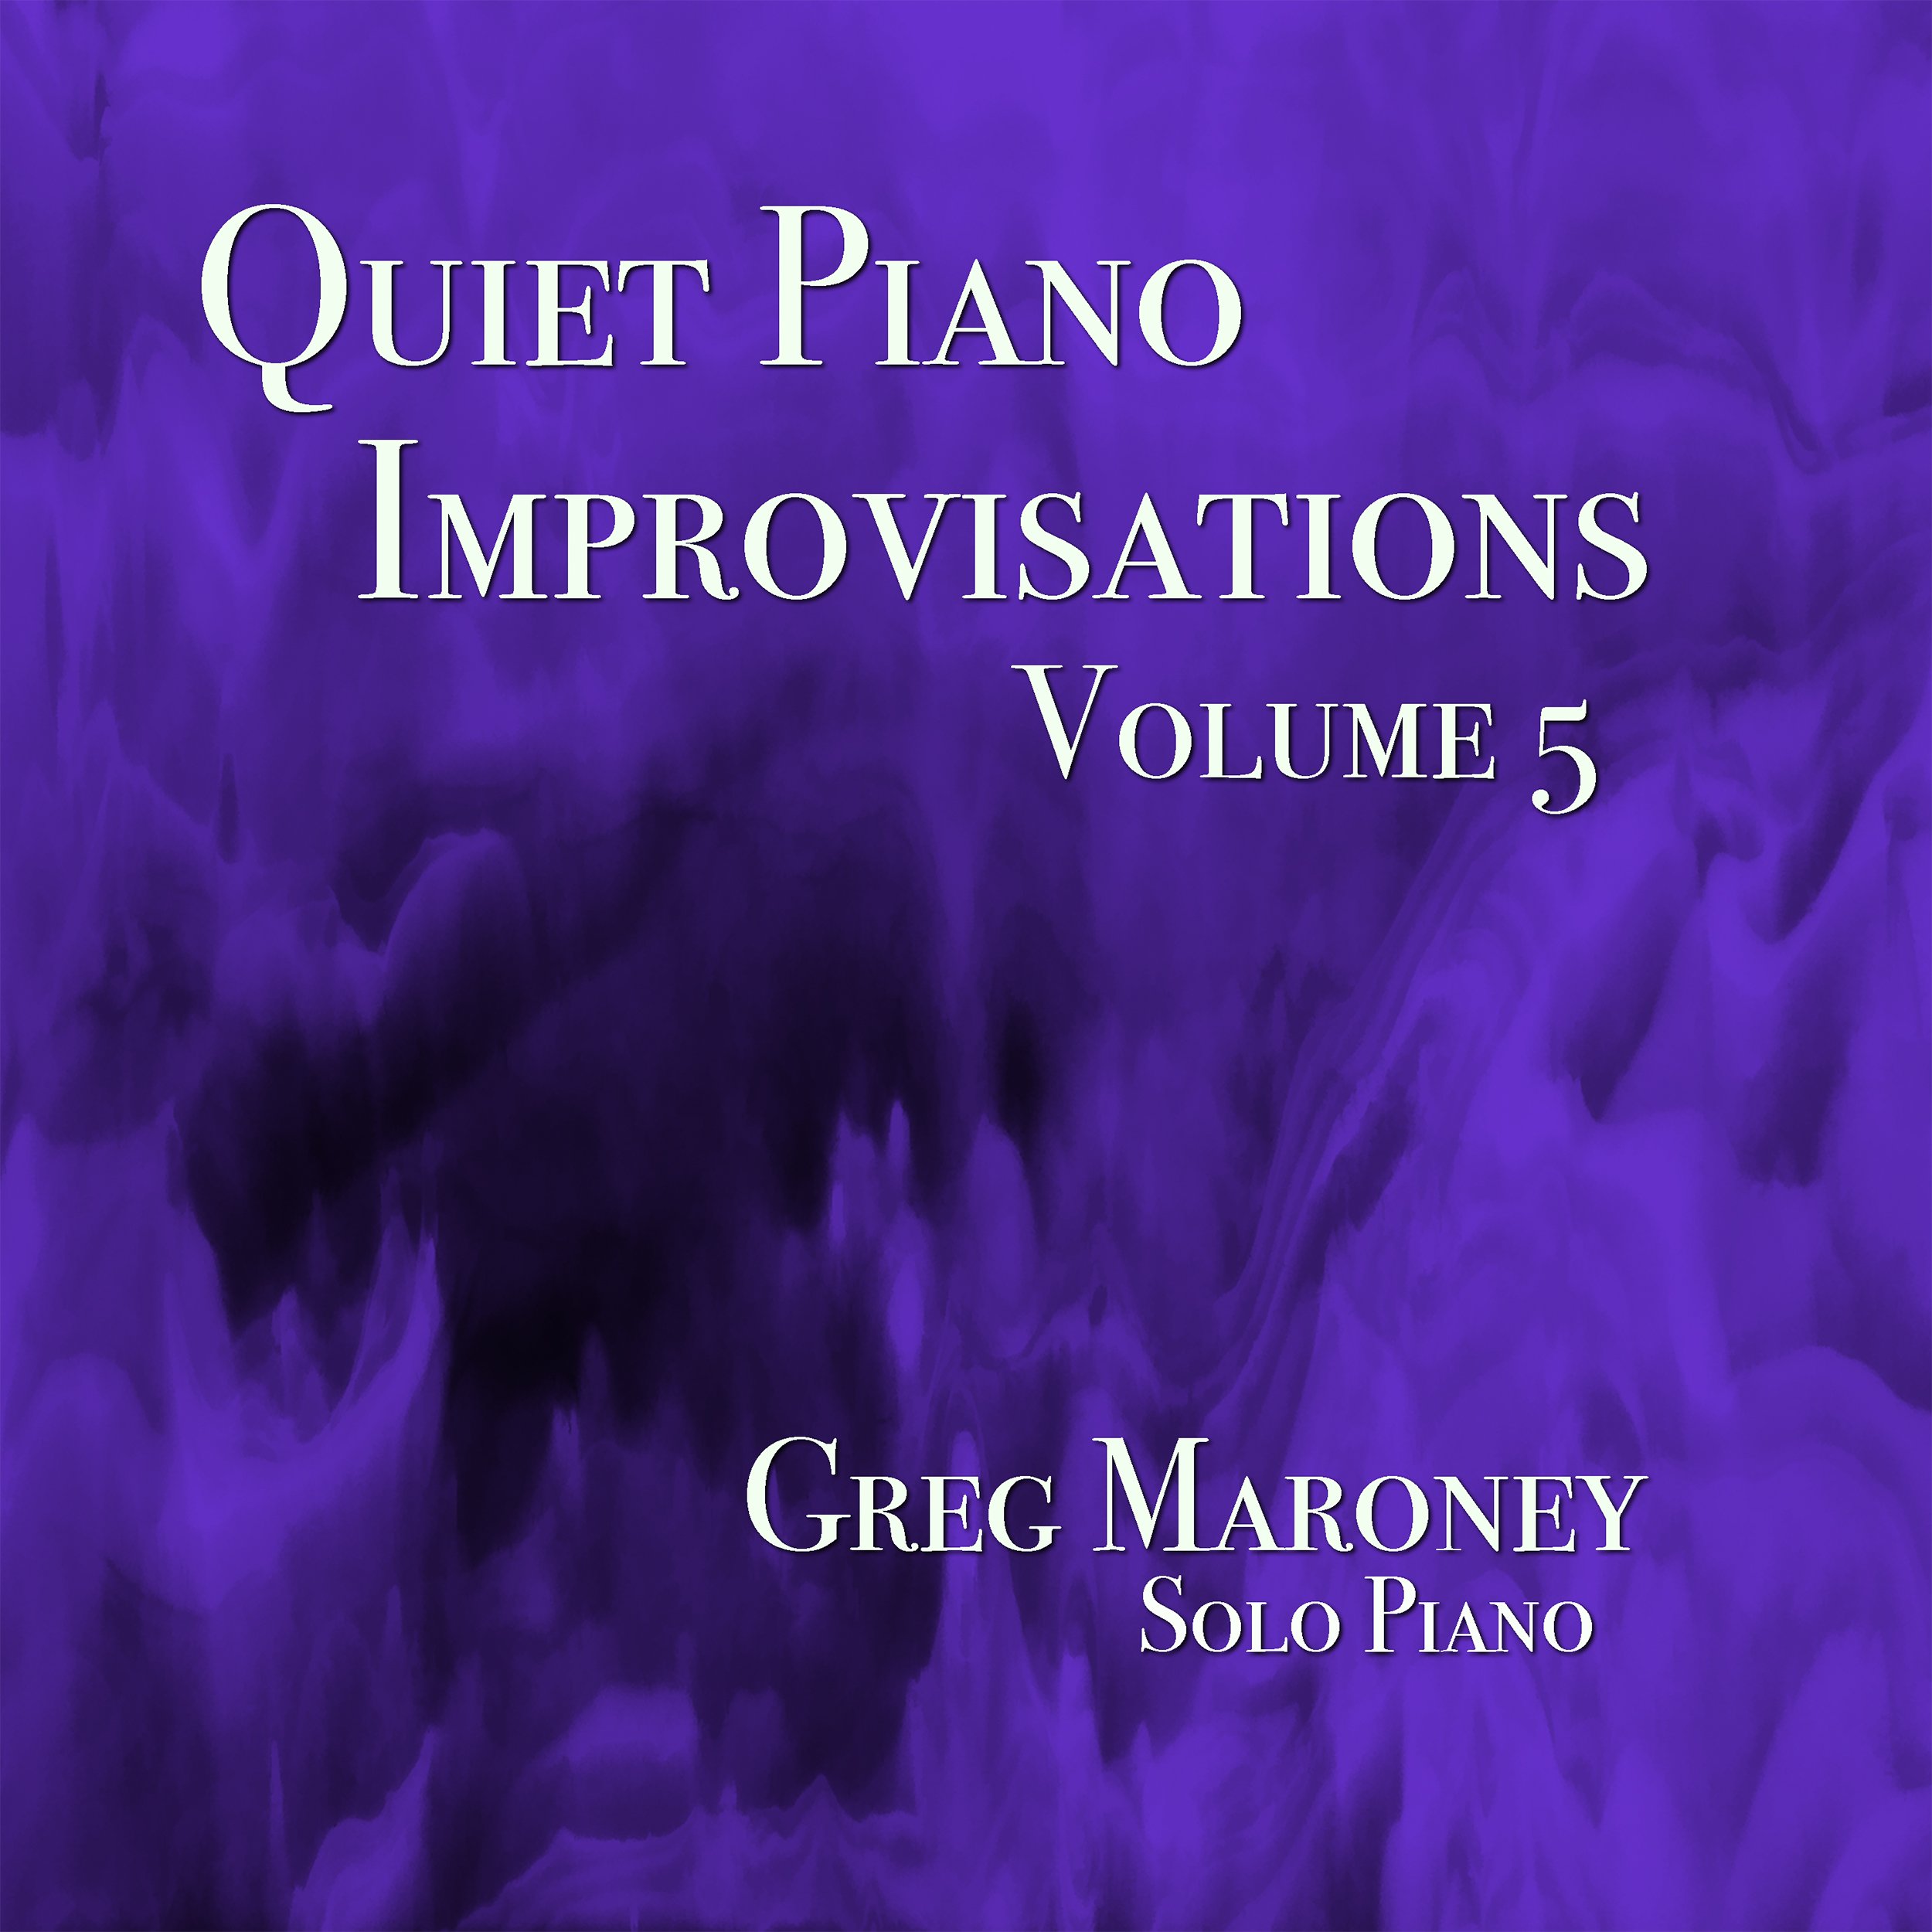 Greg Maroney ~ Solo Piano Music